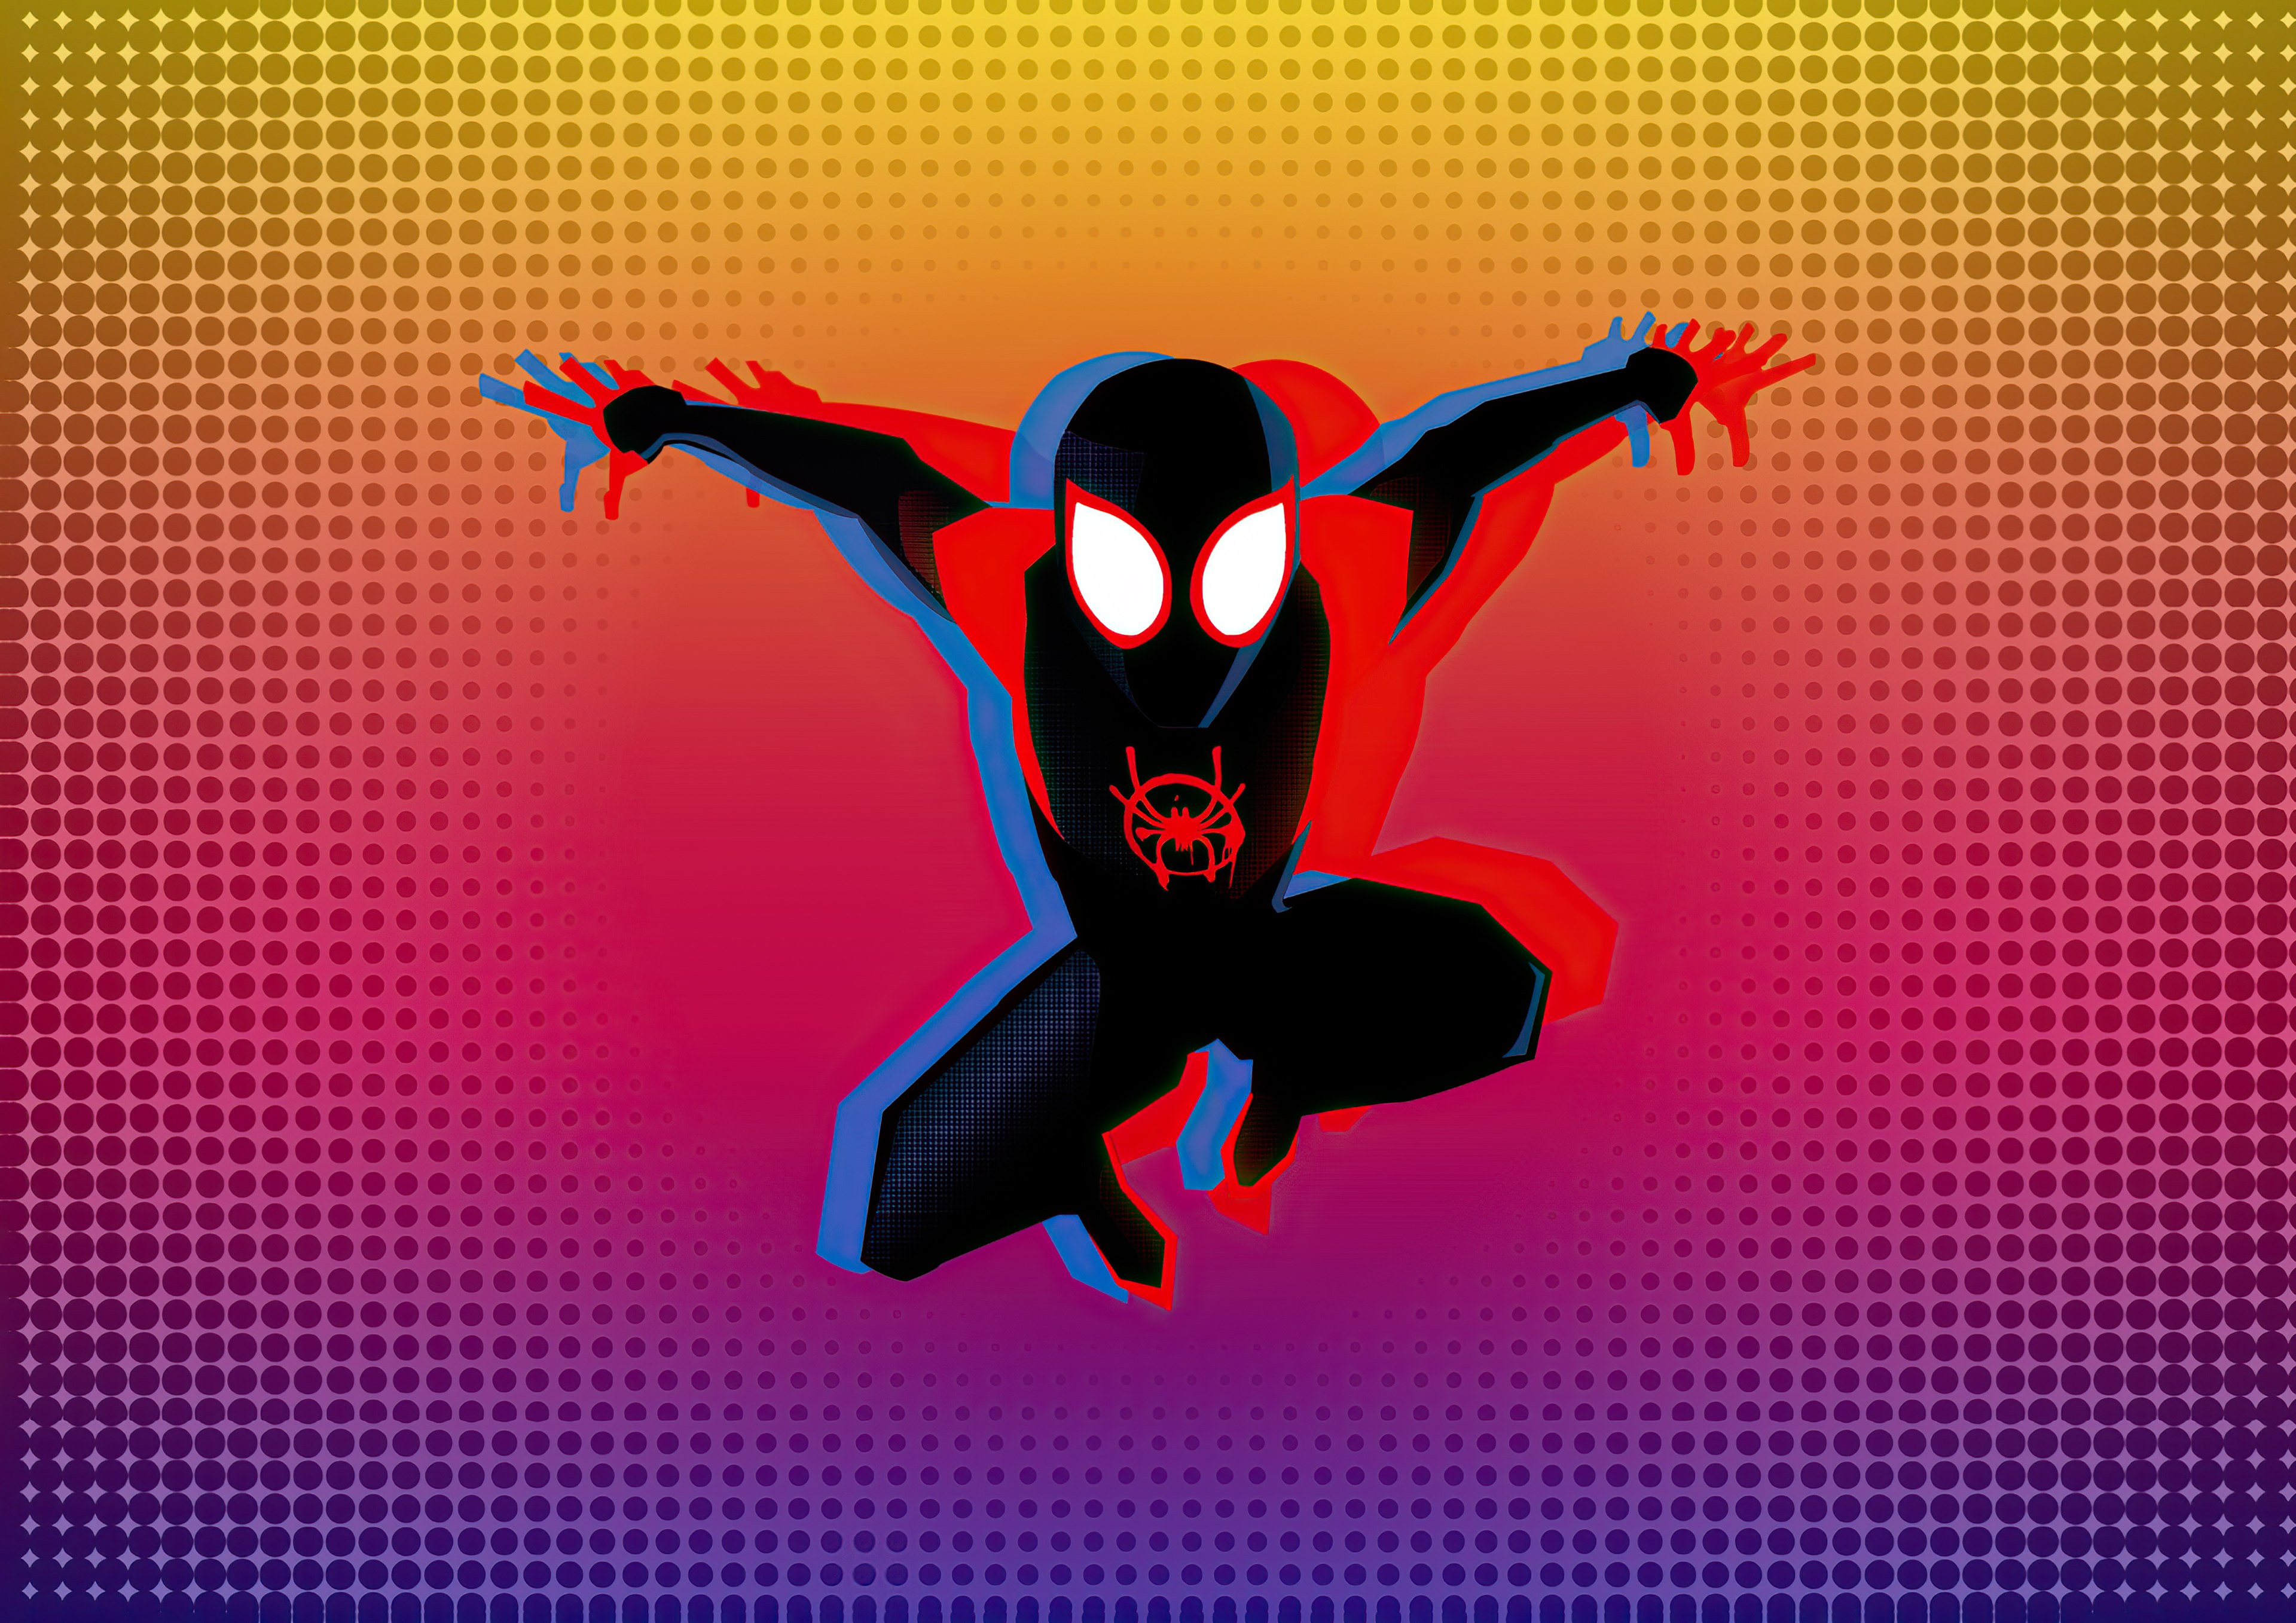 Спайдер майлз моралес. Человек-паук (Майлз Моралес). Человек паук Майлса Маралиса. Spider man Майлз Моралес. Spider man Miles morales через вселенные.